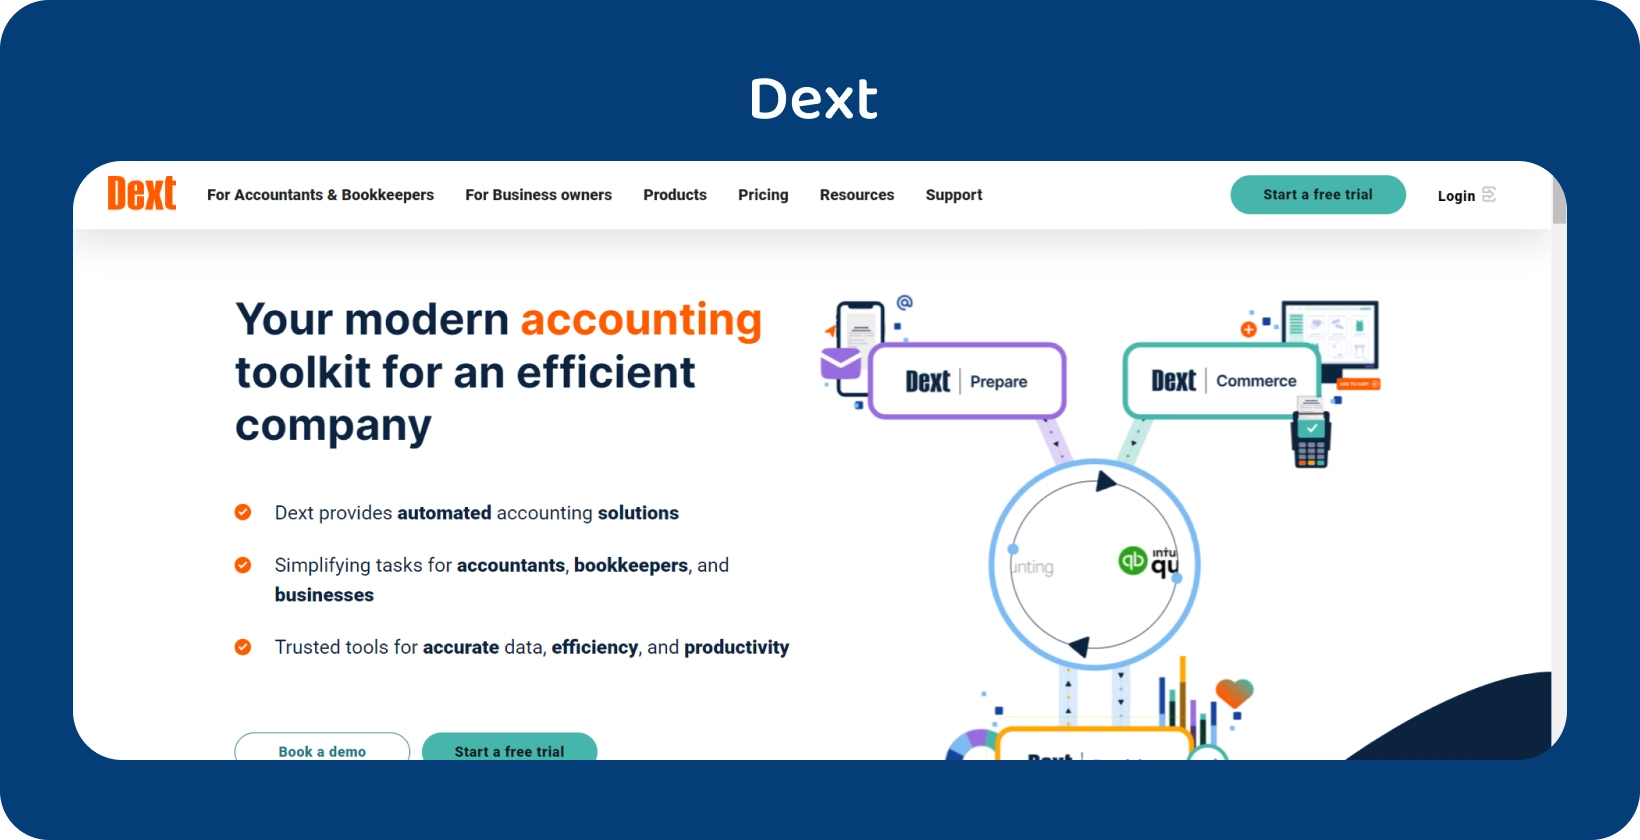 Špičkové rozhranie účtovných nástrojov spoločnosti Dext zdôrazňuje automatizáciu pre profesionálov v účtovníctve a účtovníctve.